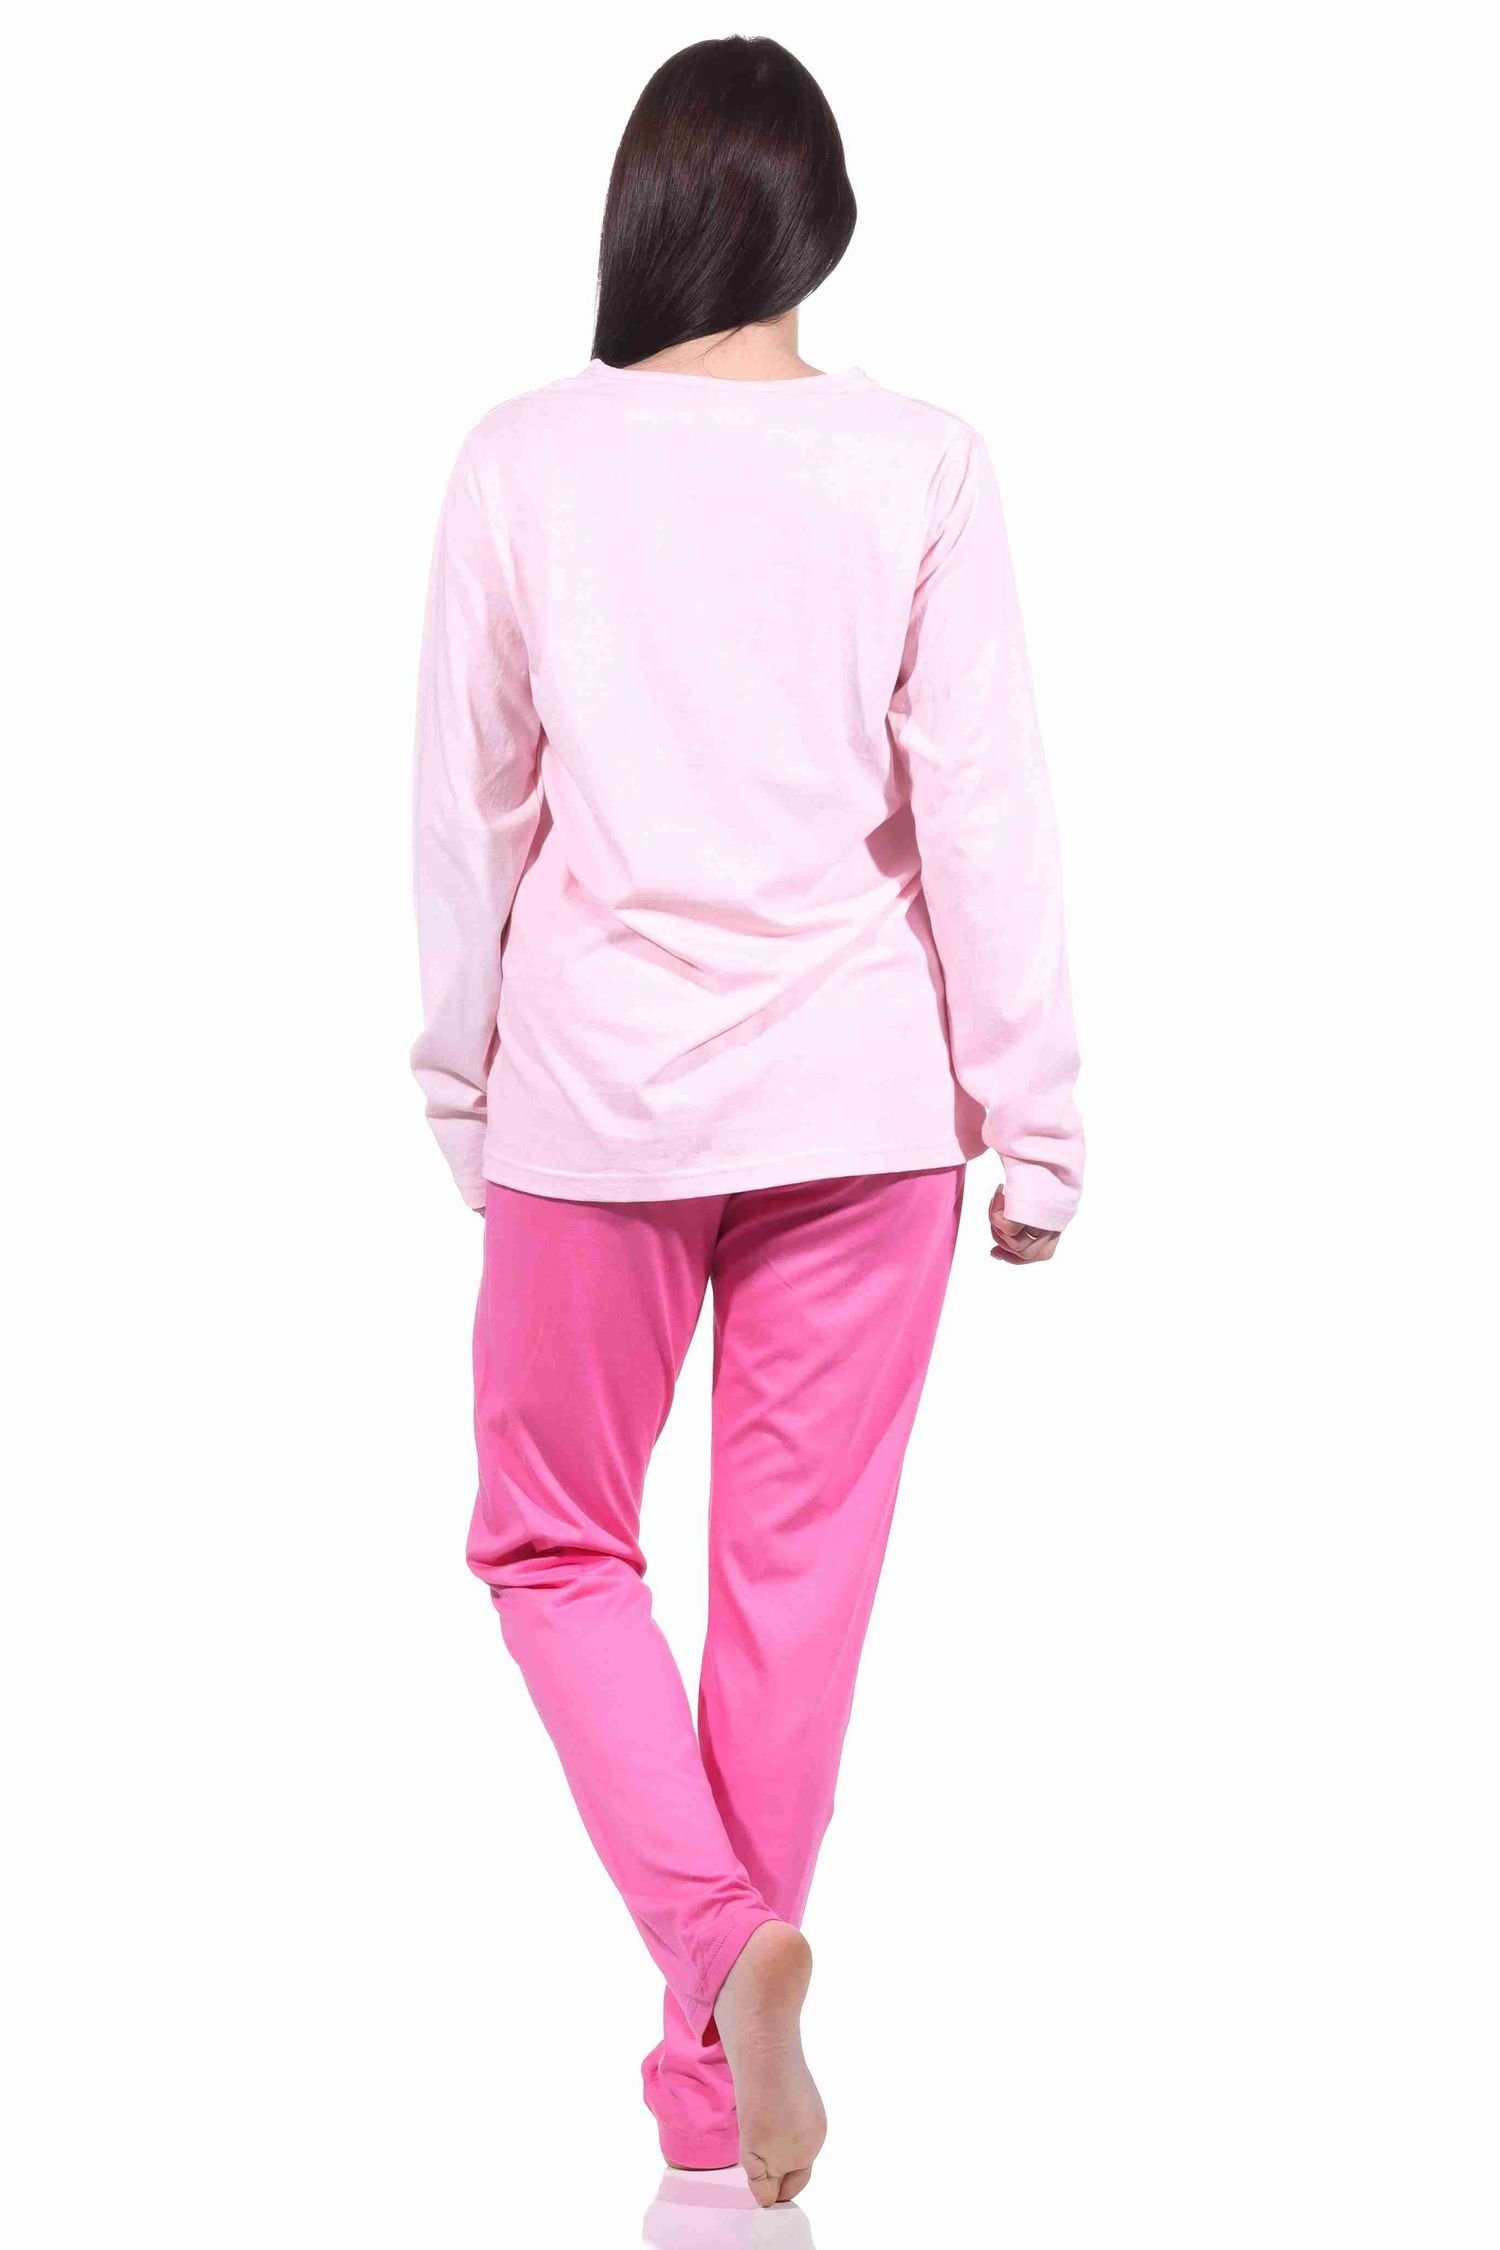 langarm rosa Pyjama Herzmotiv Schlafanzug 904 by Damen 212 10 Pyjama RELAX Normann mit -